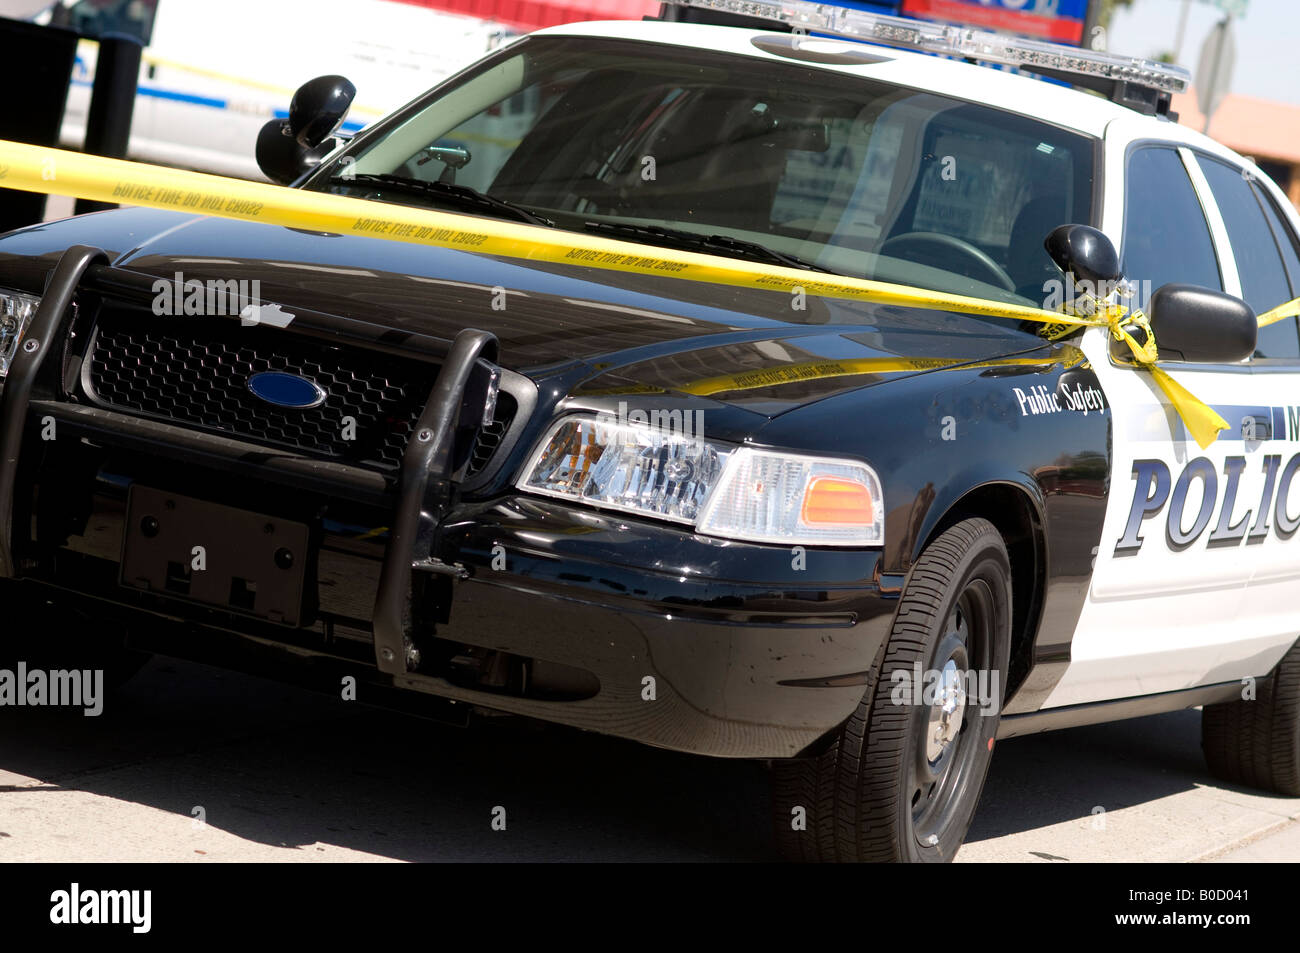 Scène de crime dans la zone urbaine de la ville de Mesa, AZ, USA. Cordon de police off salon autour d'une station d'essence après une violente attaque à main armée. Banque D'Images